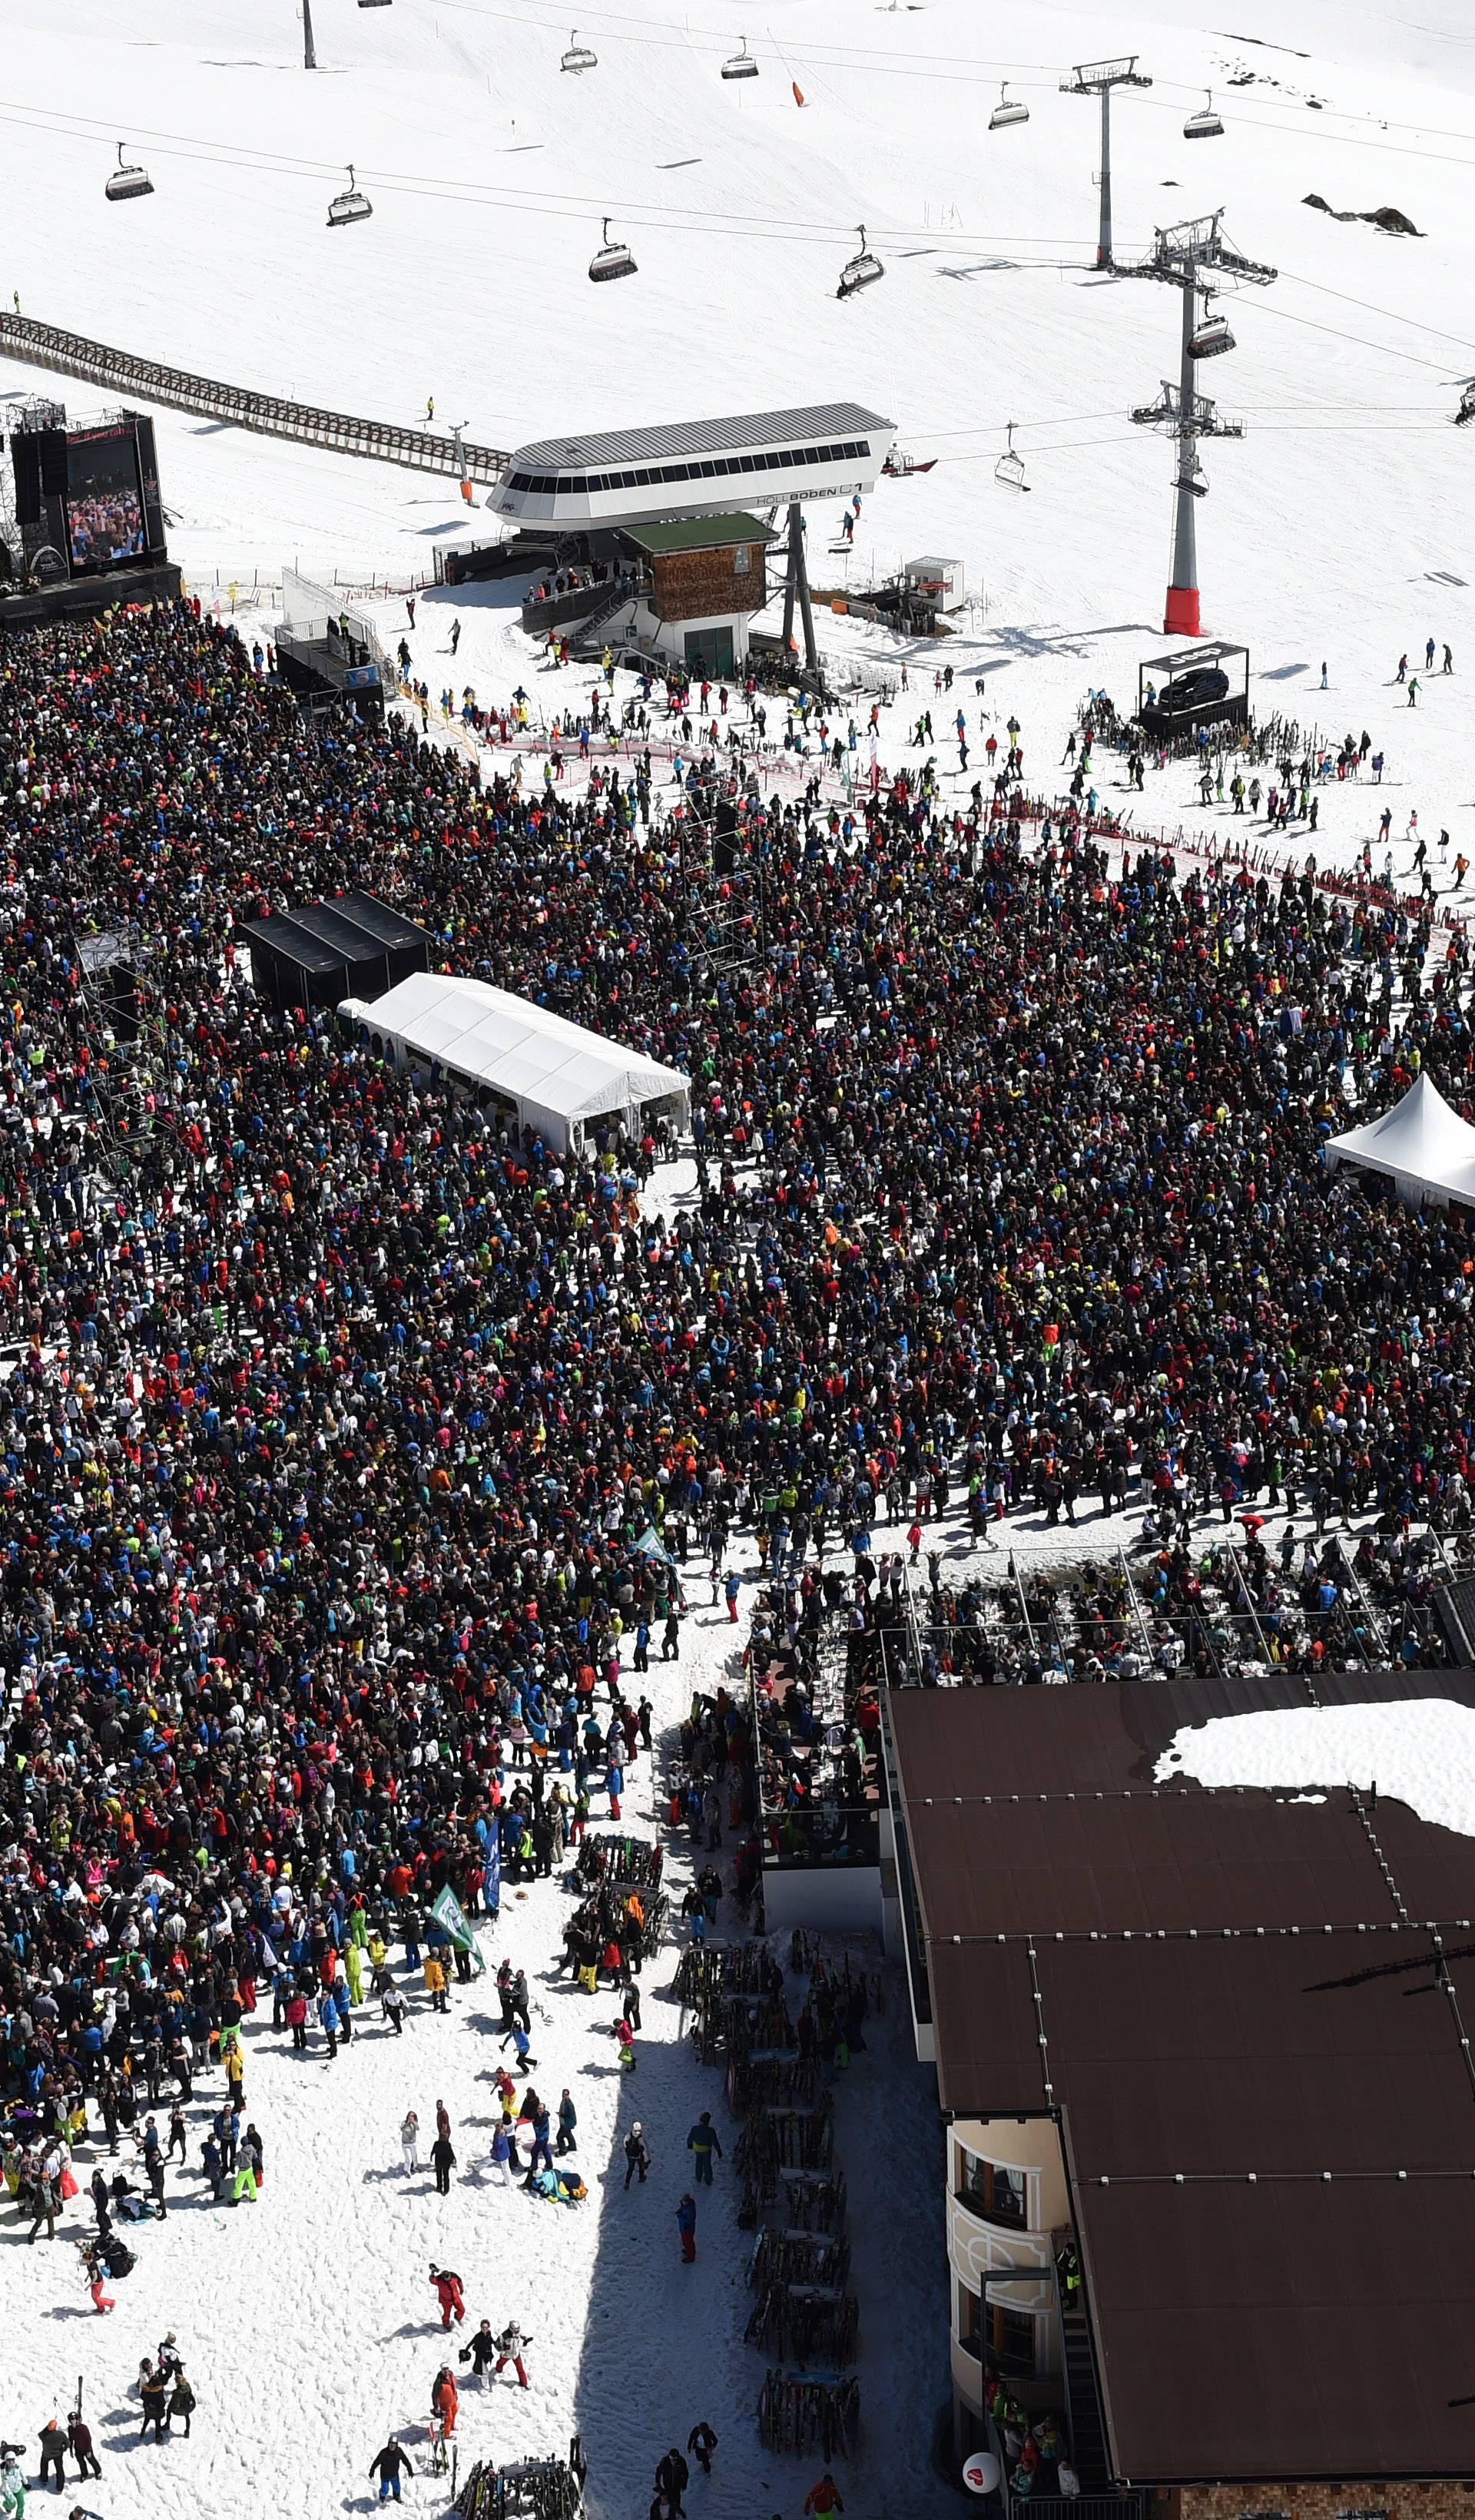 O svemu su šutjeli: Austrija istražuje skijalište zbog korone